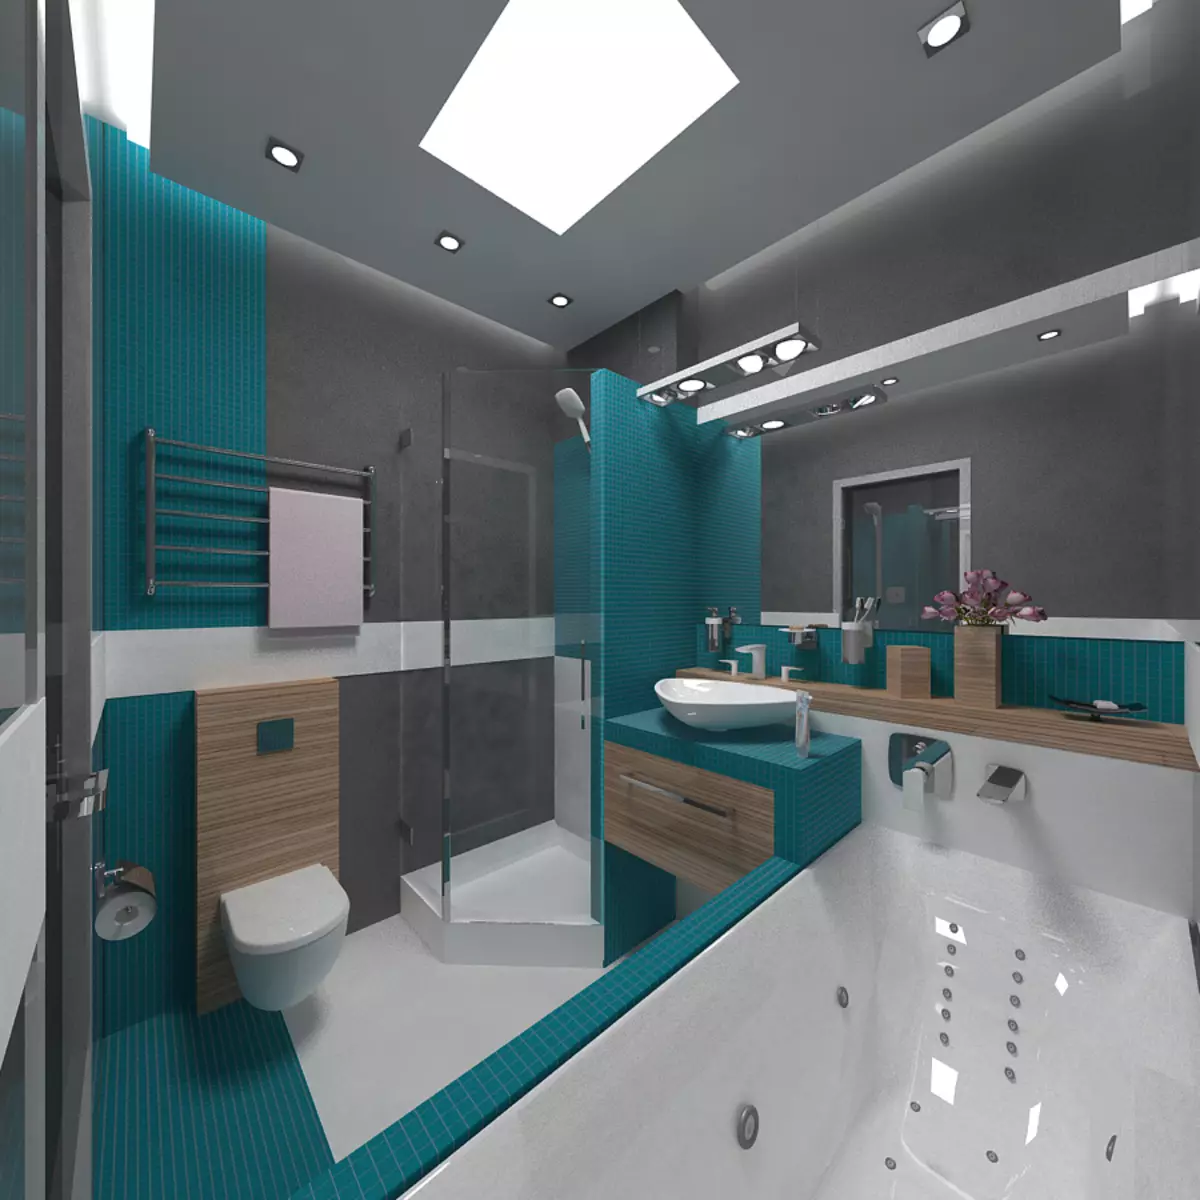 결합 된 욕실 6 평방 미터의 디자인. M (77 사진) : 화장실, 목욕 레이아웃 2 x 3 미터의 인테리어 디자인 10454_52